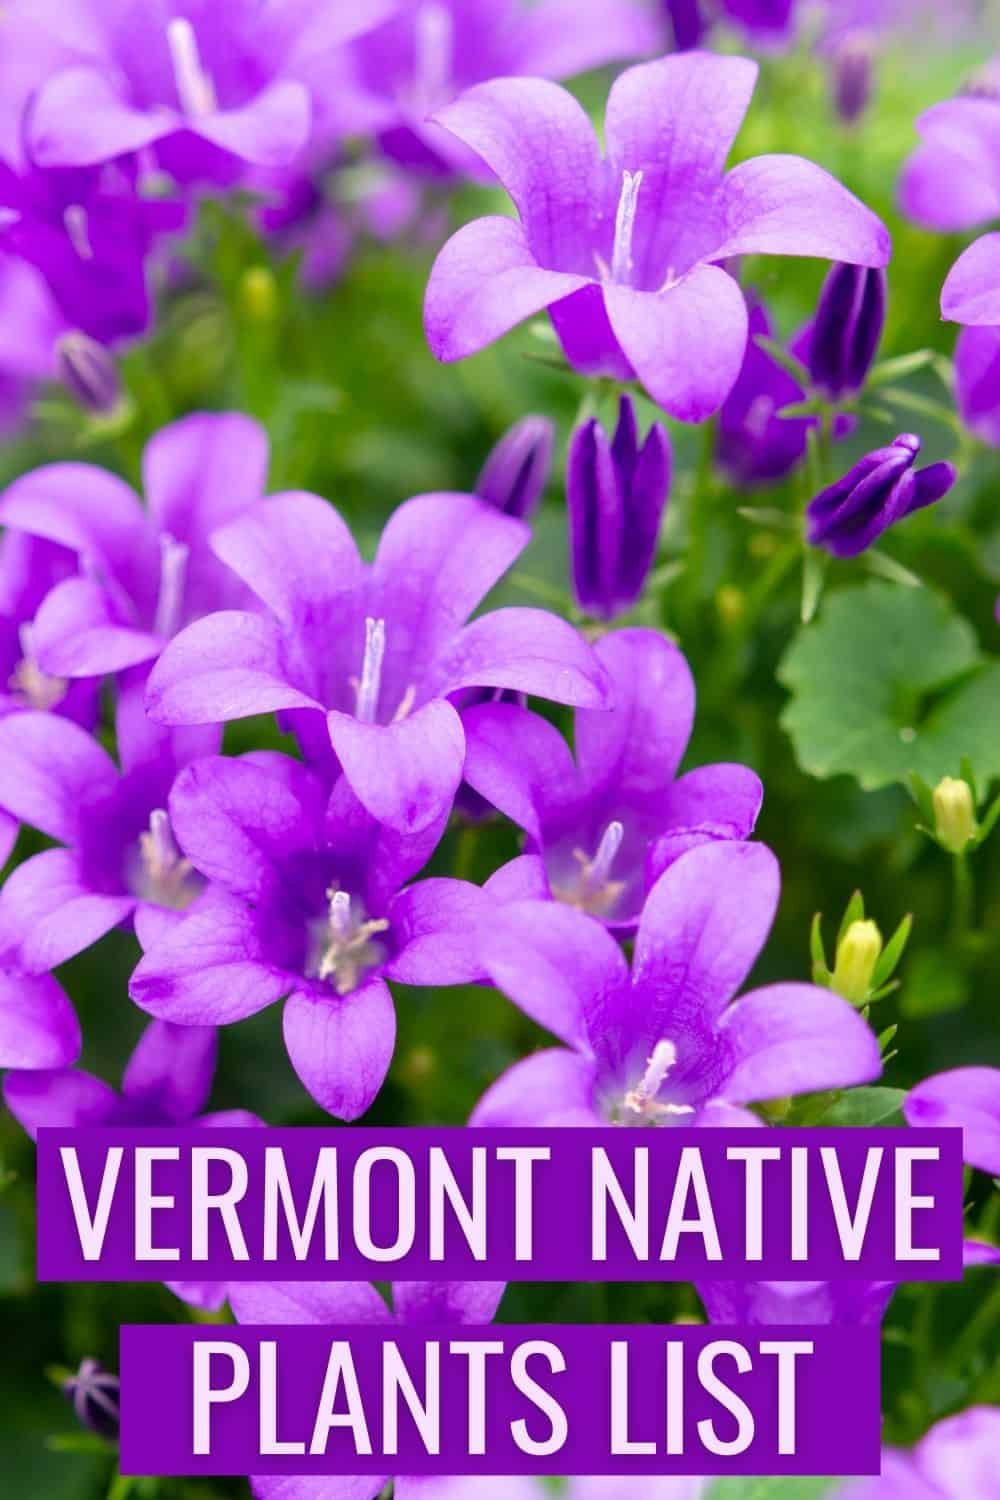 Vermont native plants list